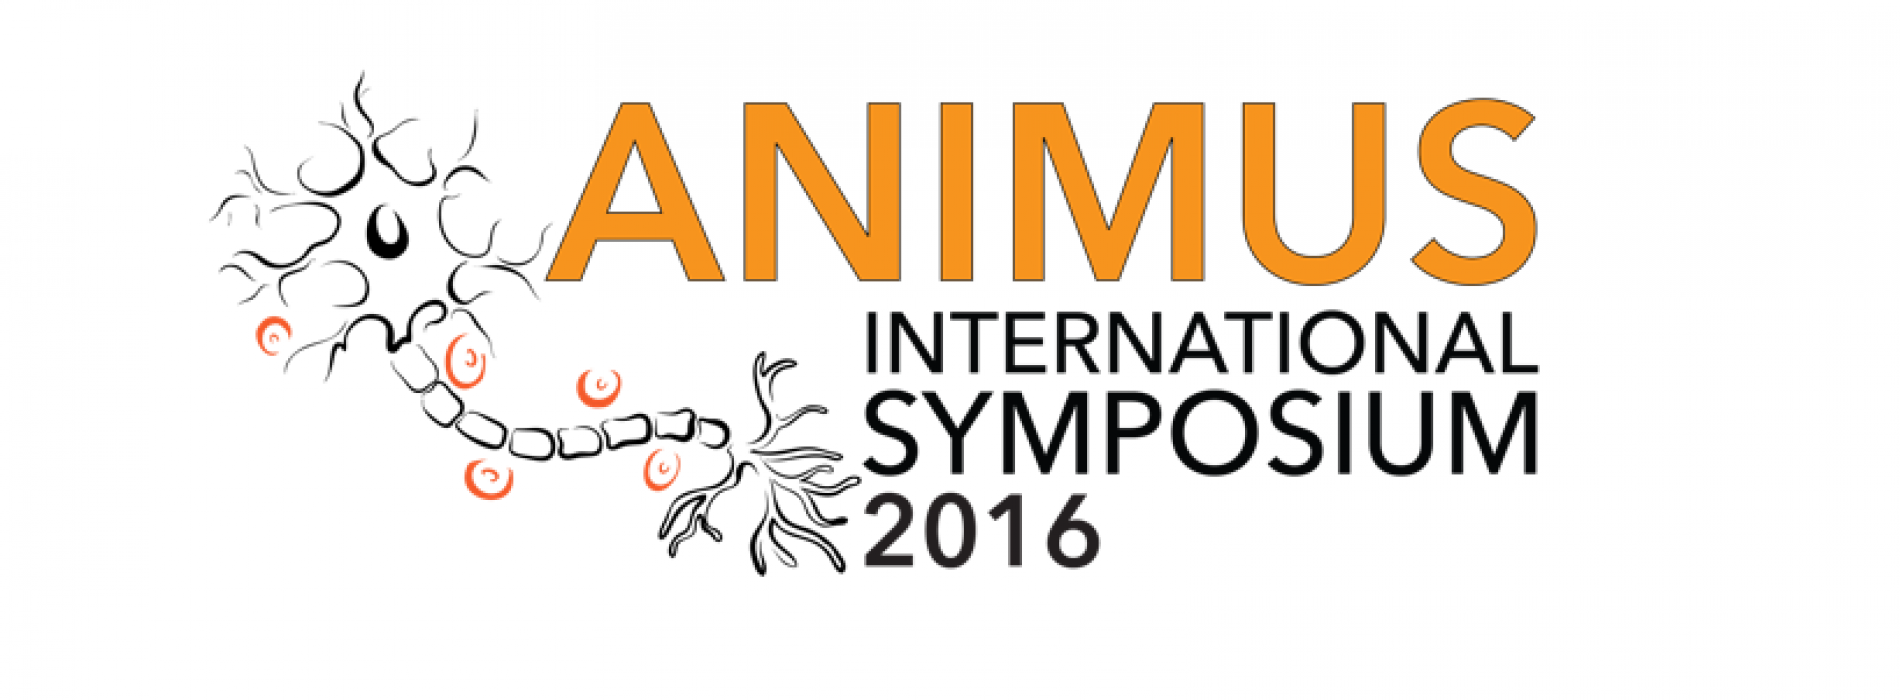 ANIMUS Symposium reminder